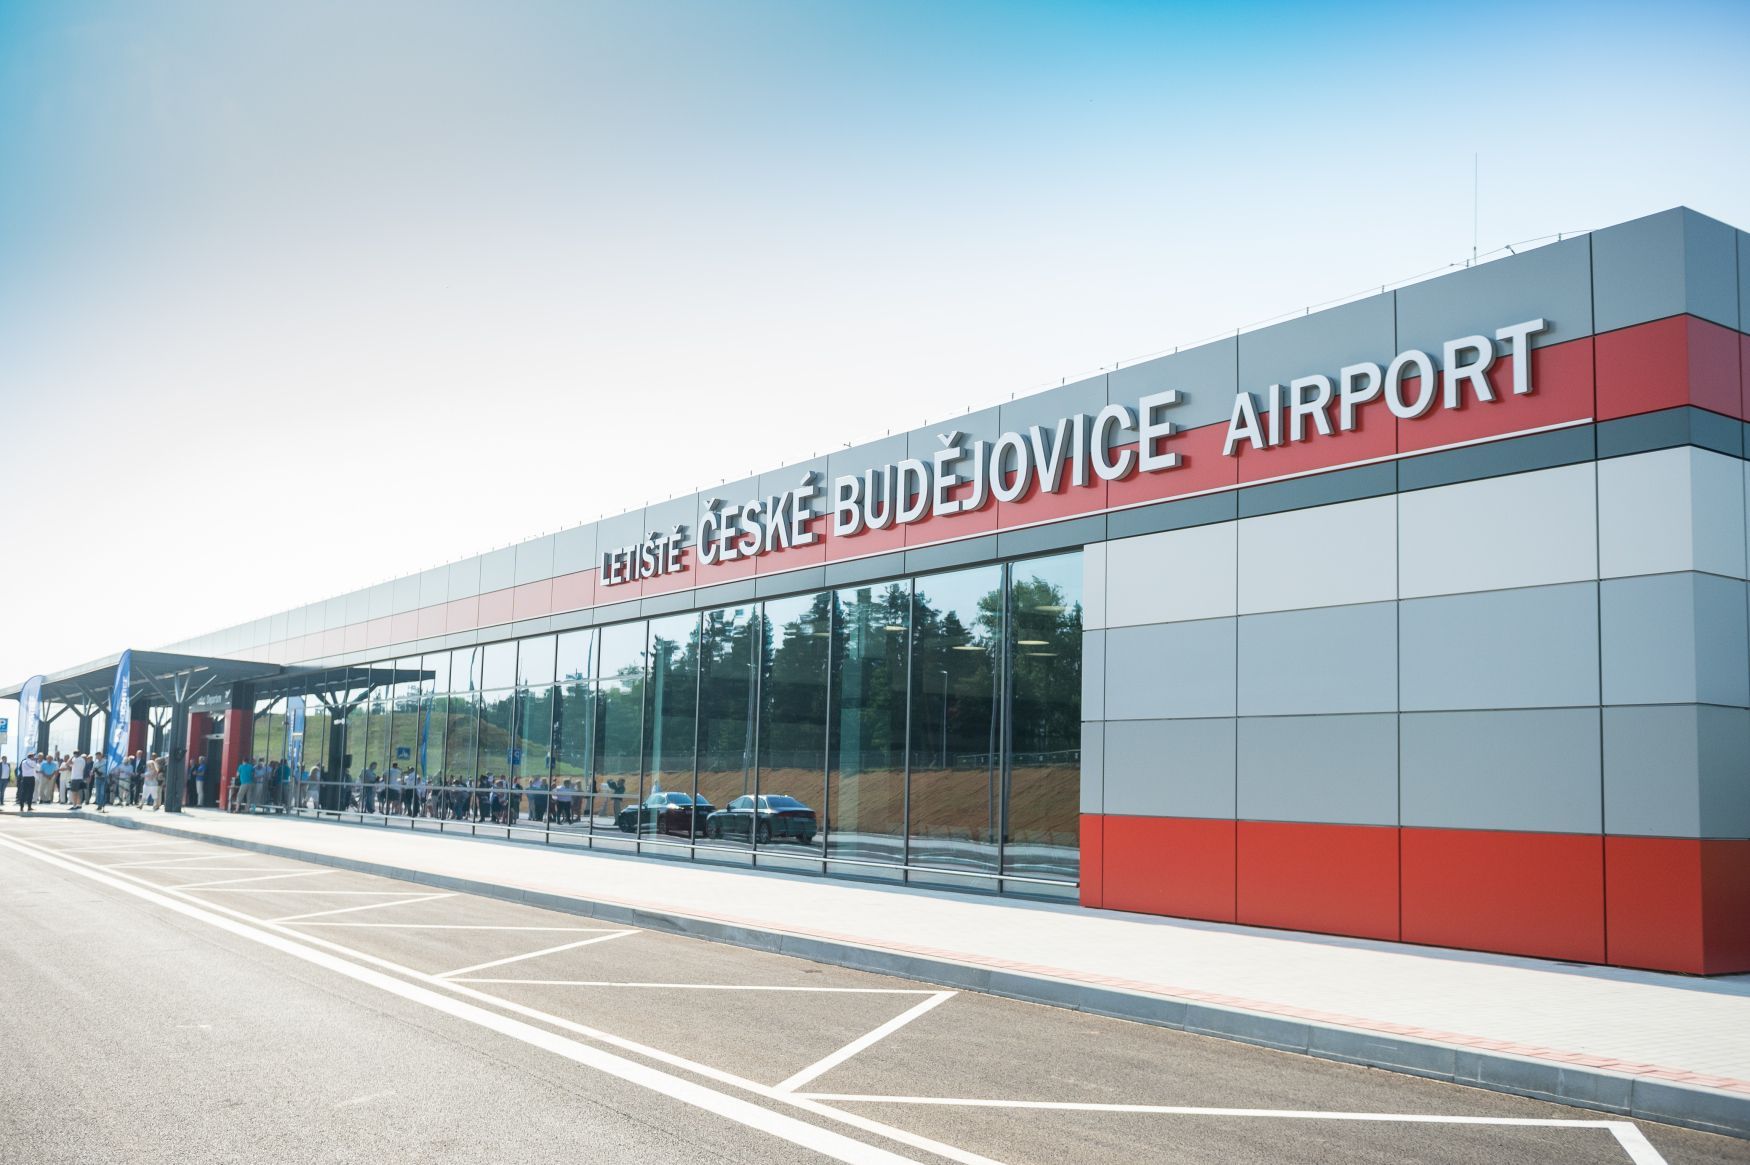 Jihočeské letiště České Budějovice